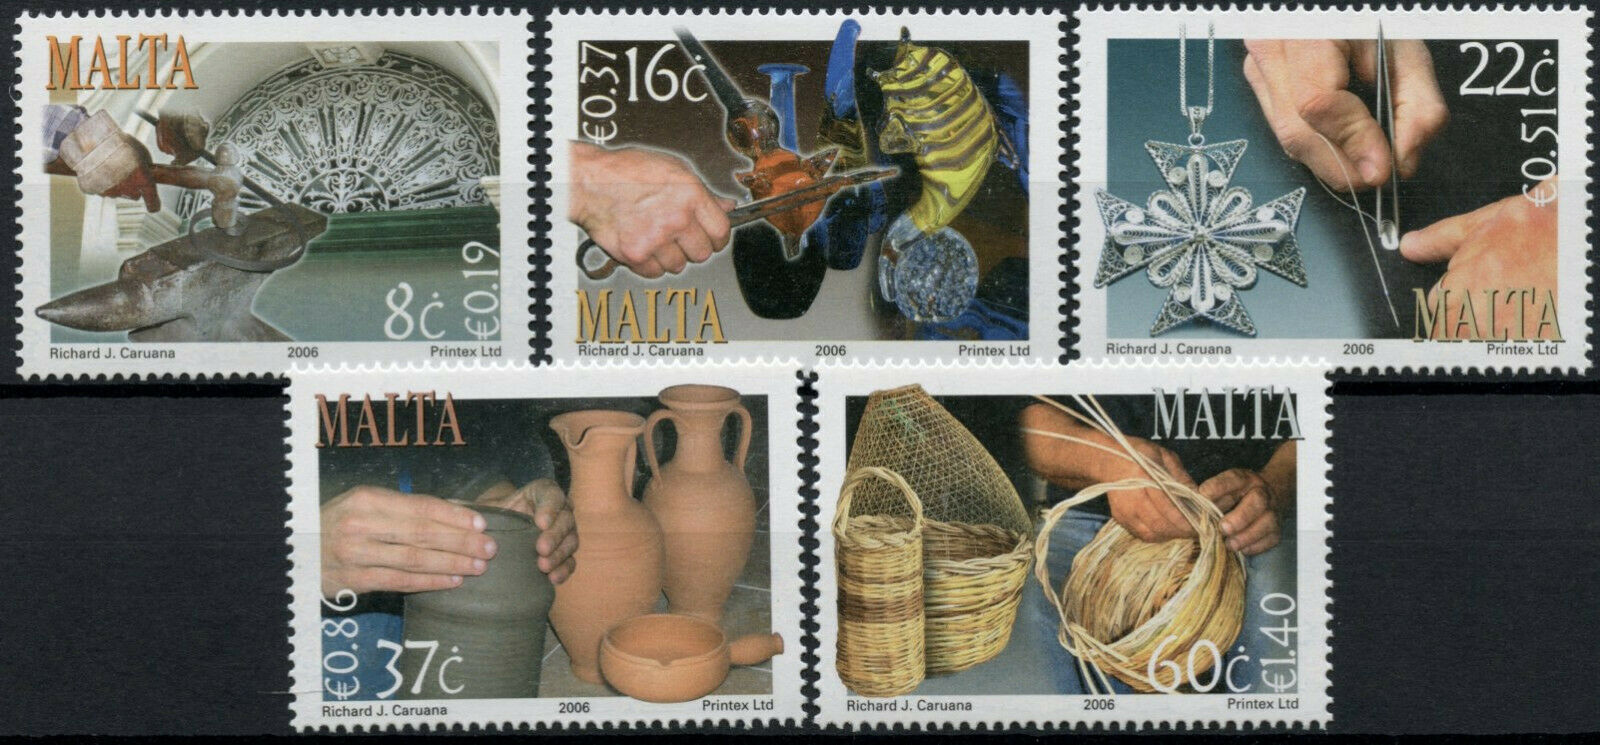 Malta Cultures Stamps 2006 MNH Crafts Basket Weaving Pottery Handicrafts 5v Set